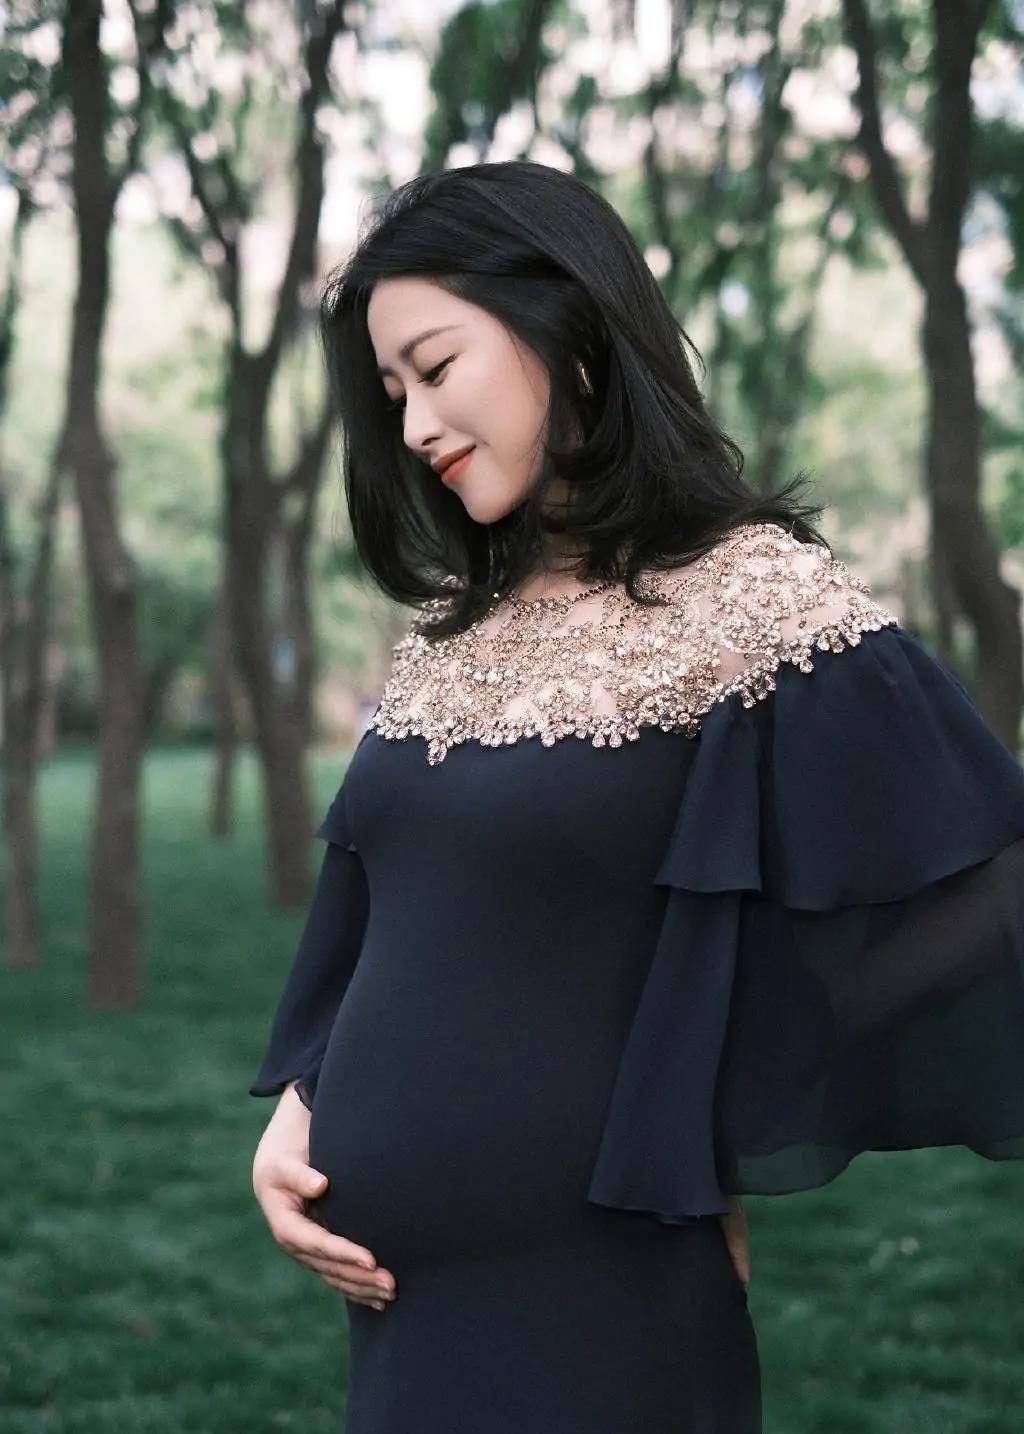 孕妇也能这么迷人,挺大肚子的朱珠出席活动,一袭蓝裙美得不像话